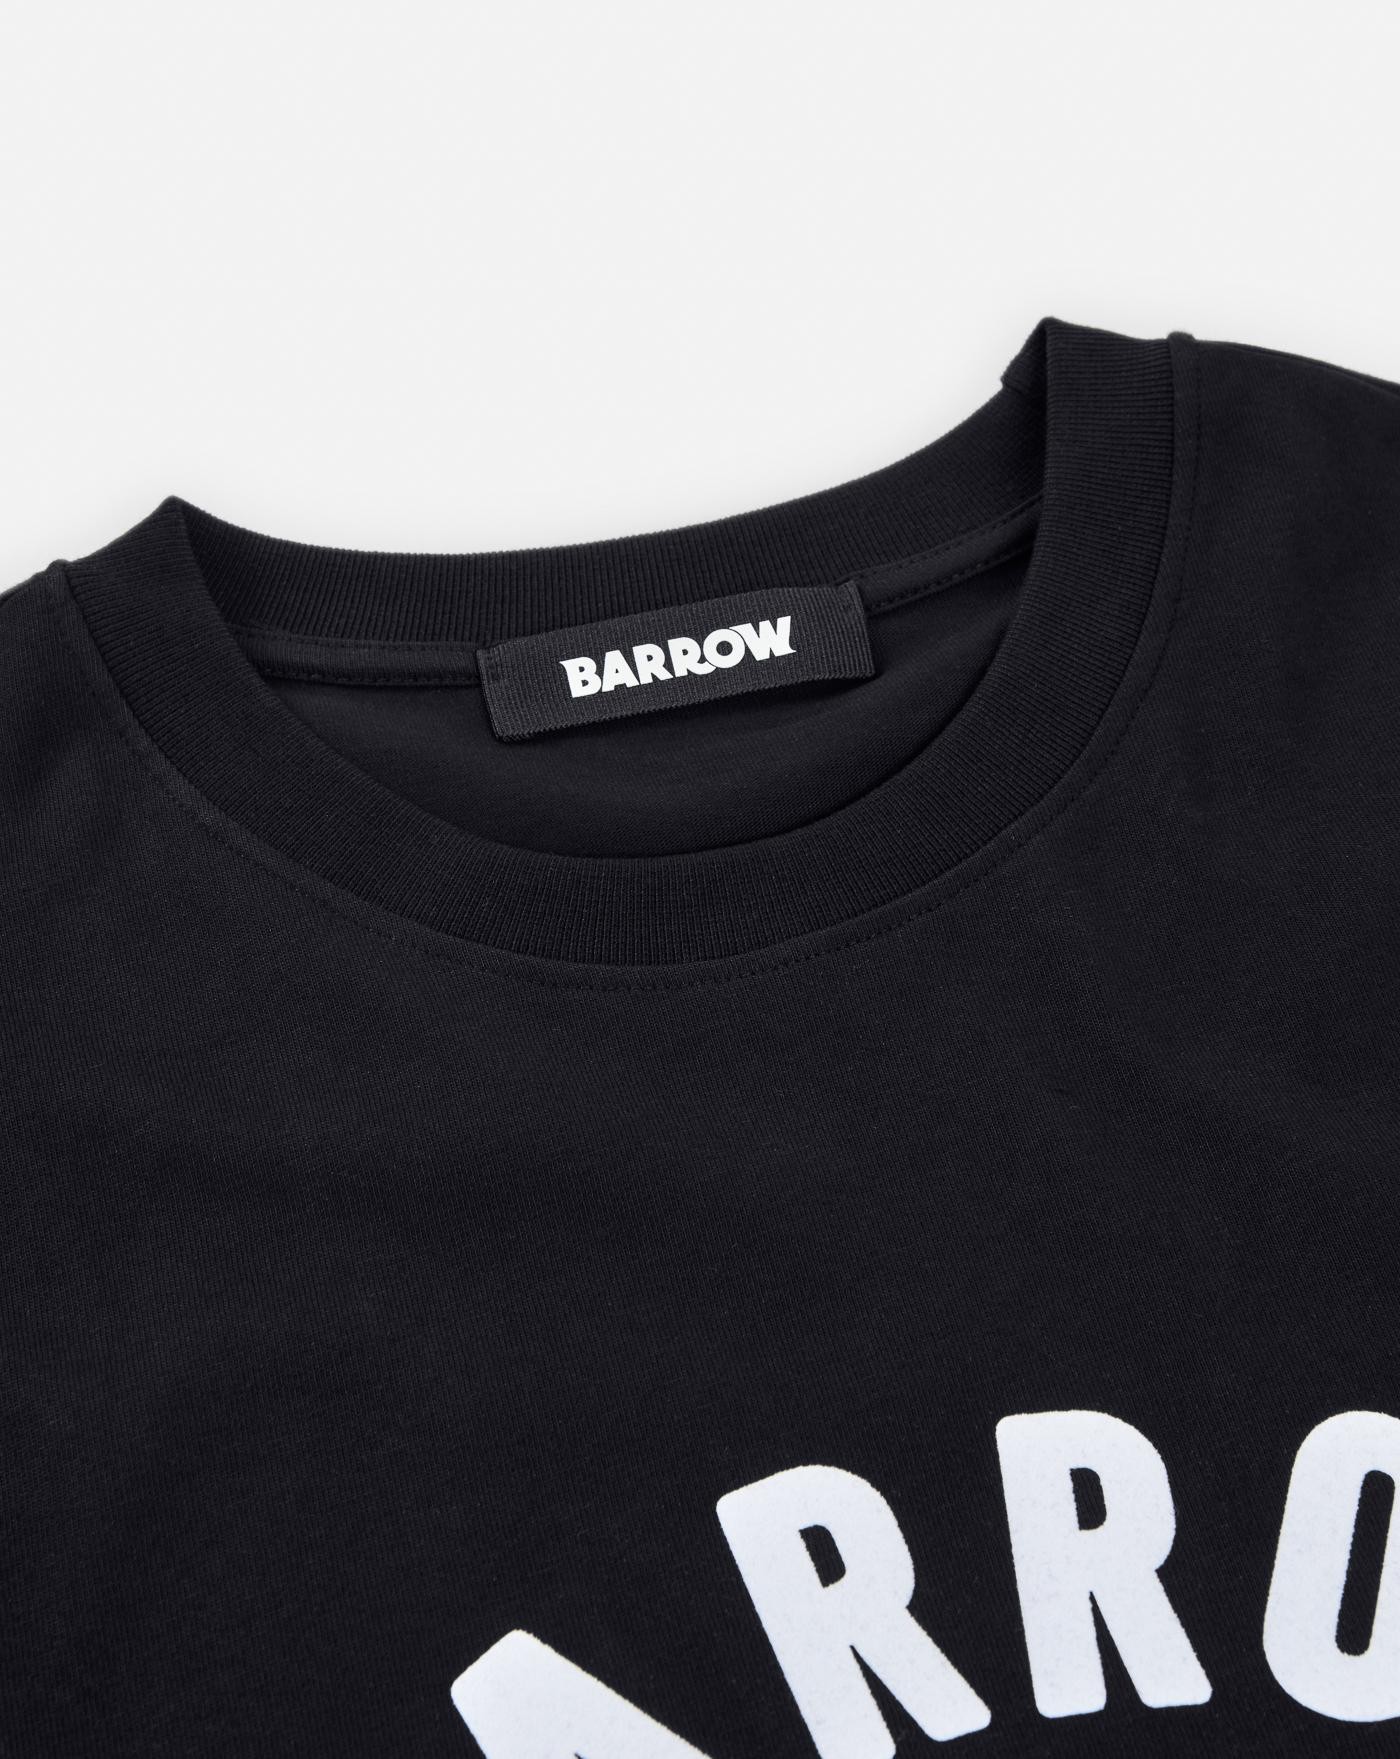 Camiseta Barrow Bear 2